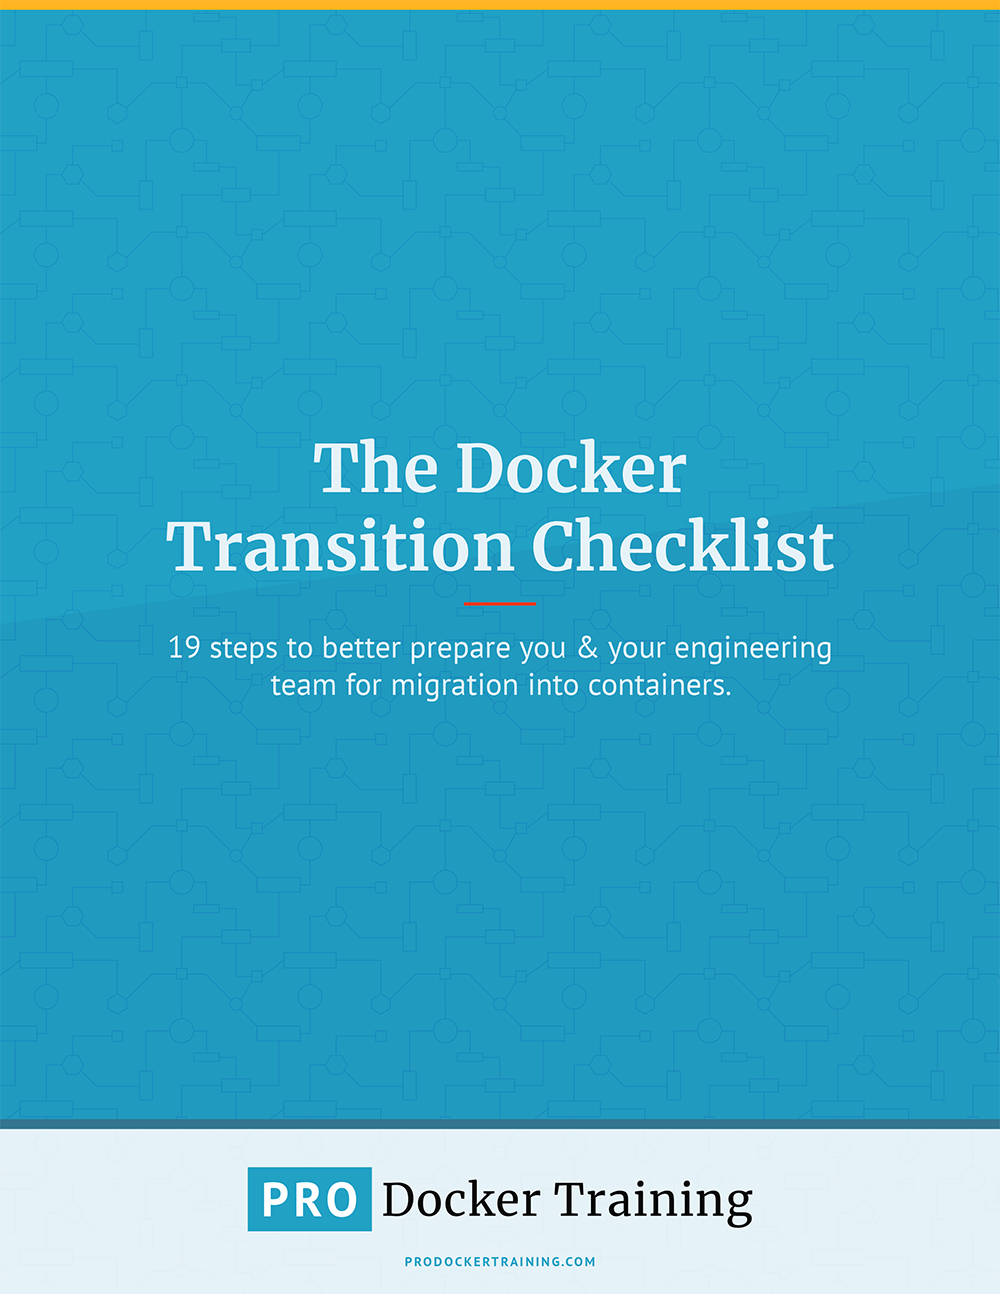 The Docker Transition Checklist